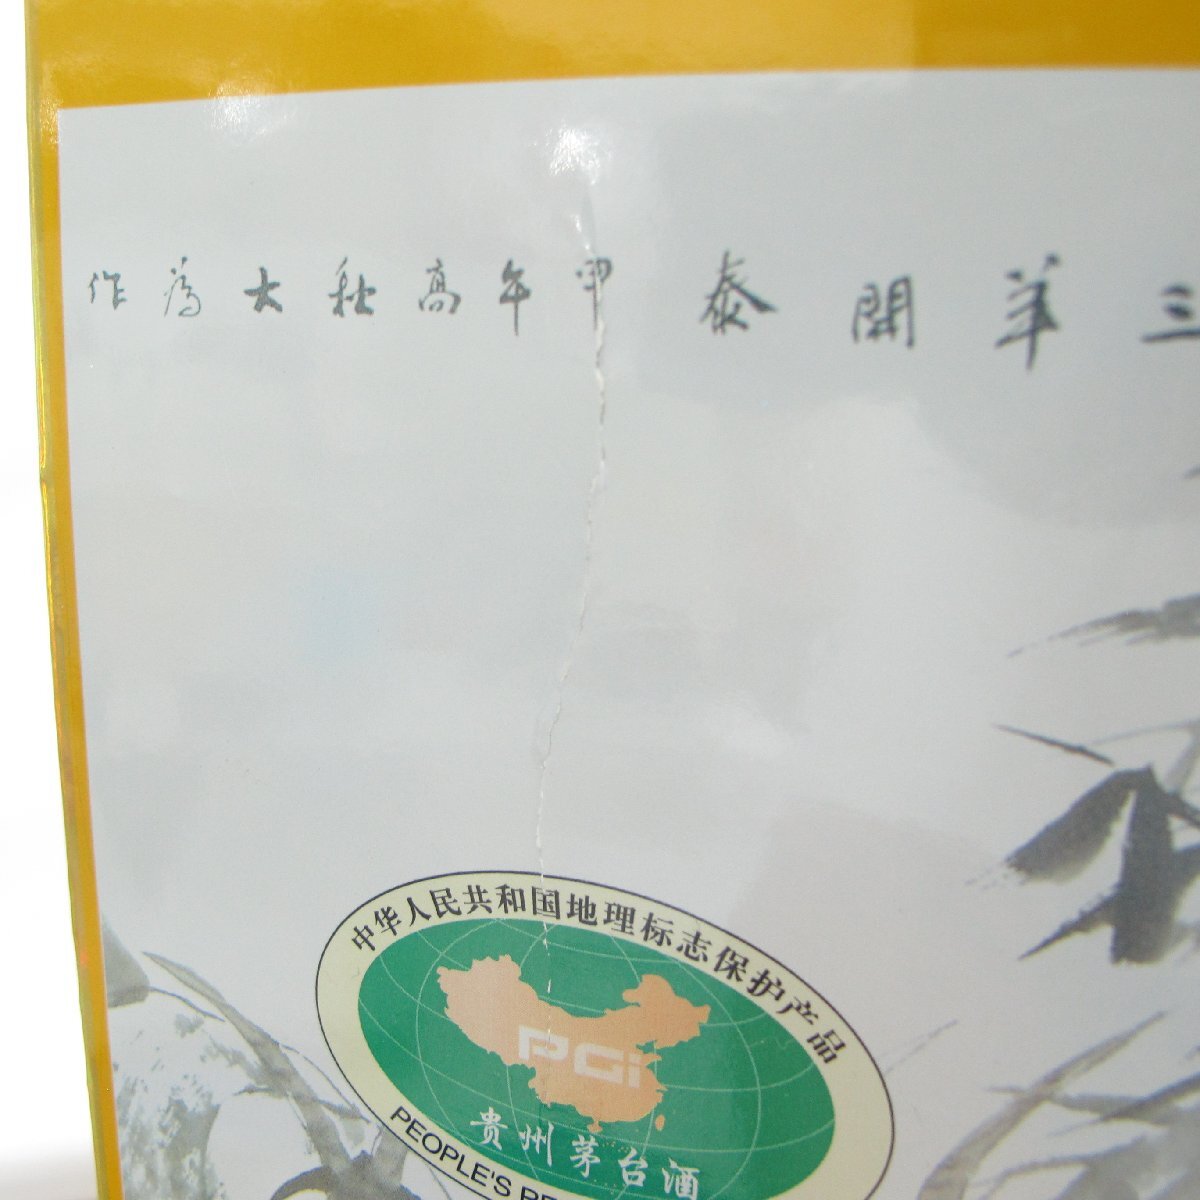 [ not yet . plug ]... pcs sake mao Thai sake . star wheat label . main bottle not yet year 2015 MOUTAI KWEICHOW China sake 500ml 53% 1040g box / booklet attaching 11576330 0515